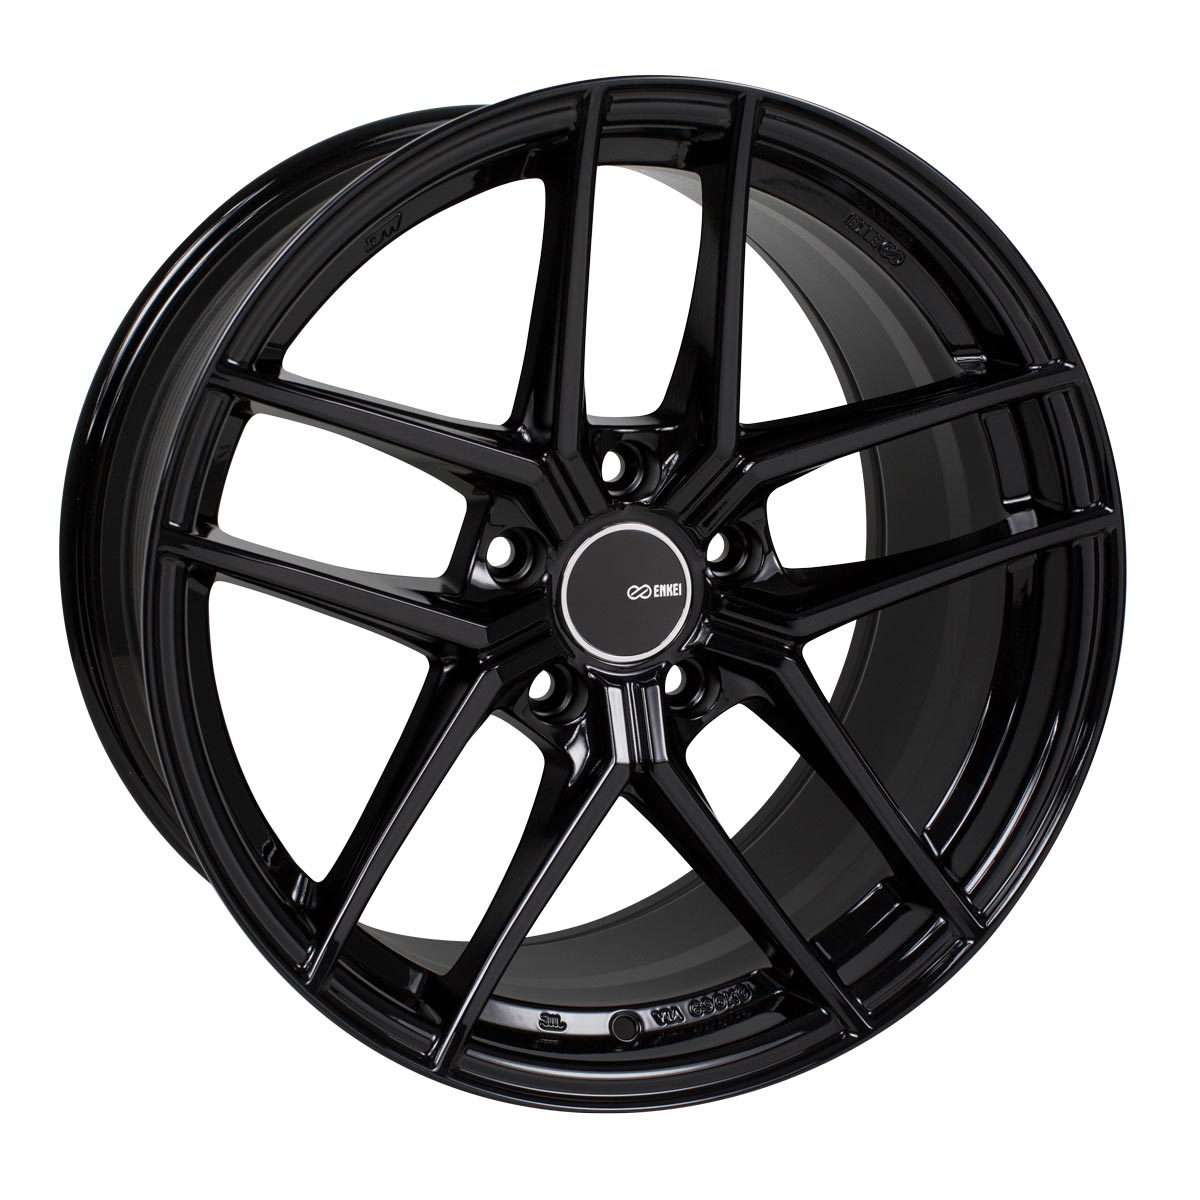 Enkei TY-5 Wheel Gloss Black 18x8.5 +42 5x112 498-885-4442BK